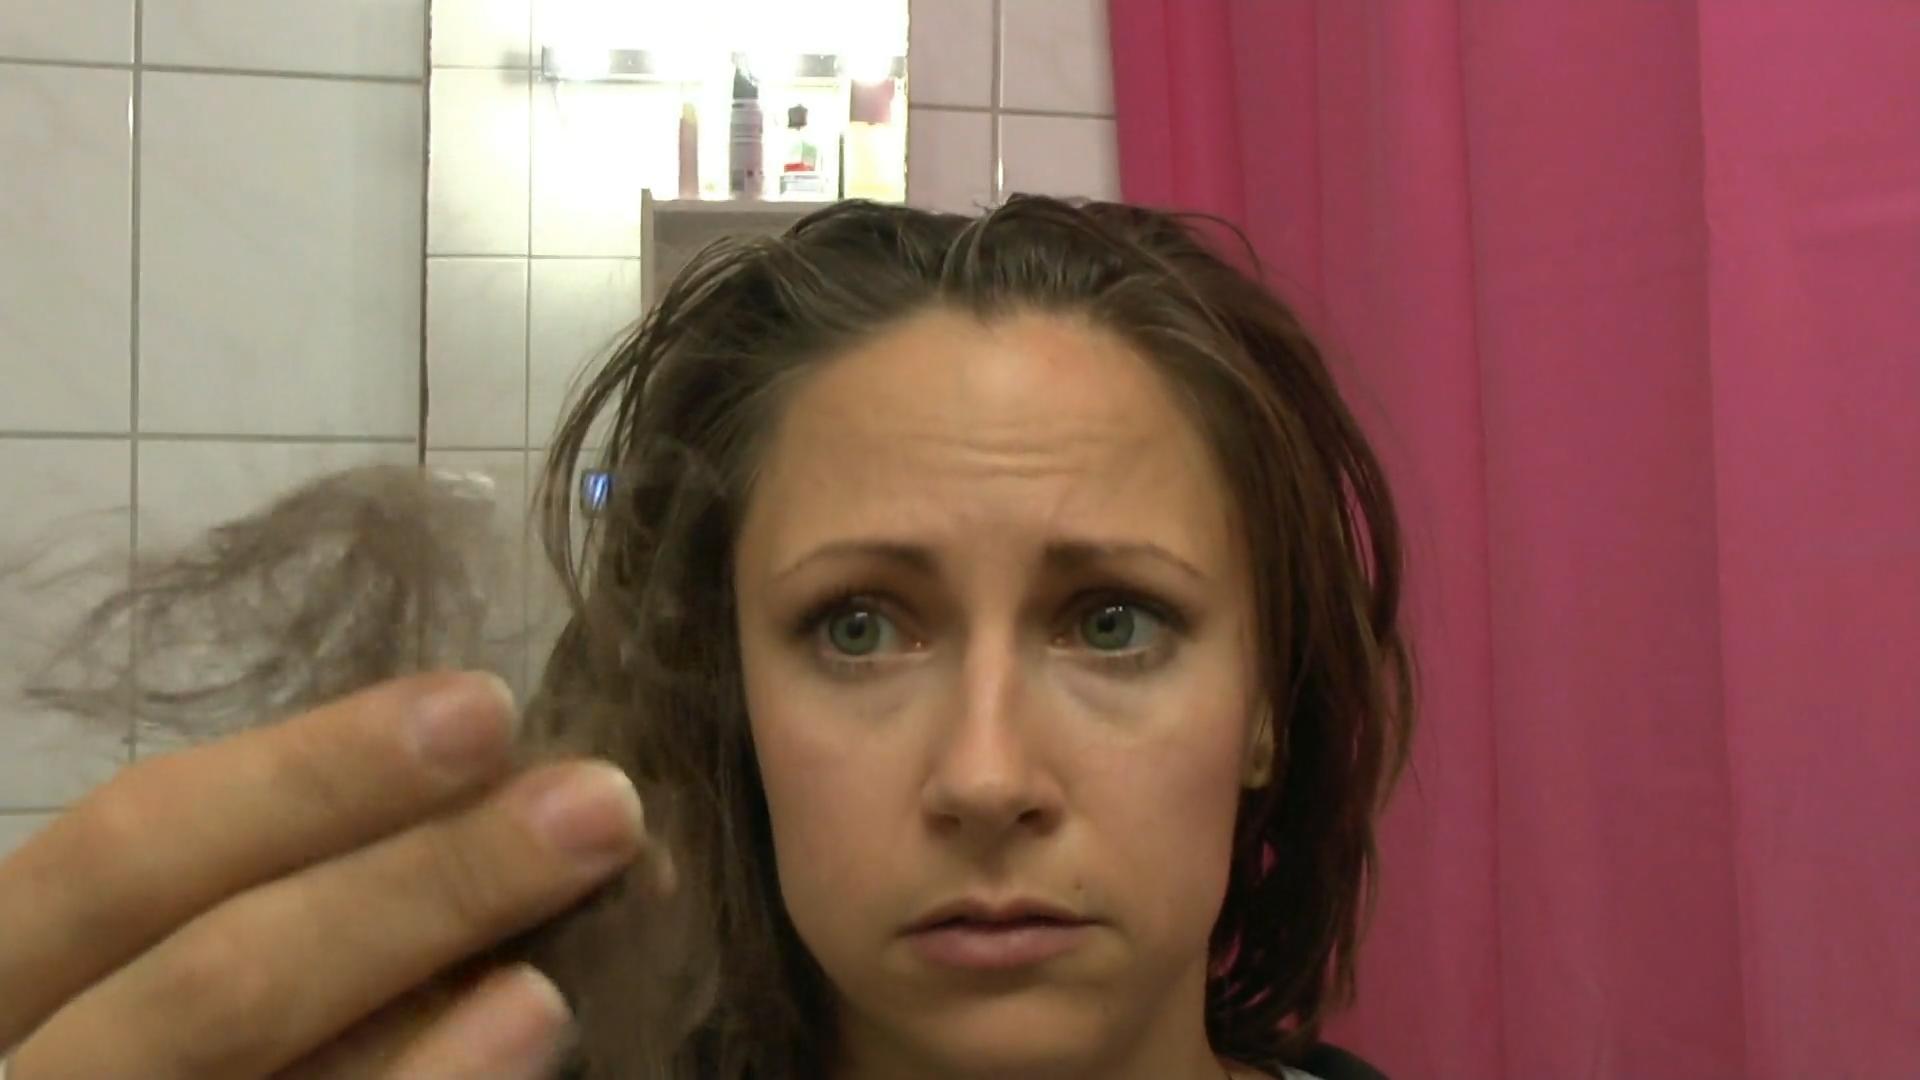 Haare waschen ohne Shampoo Reporter-Test